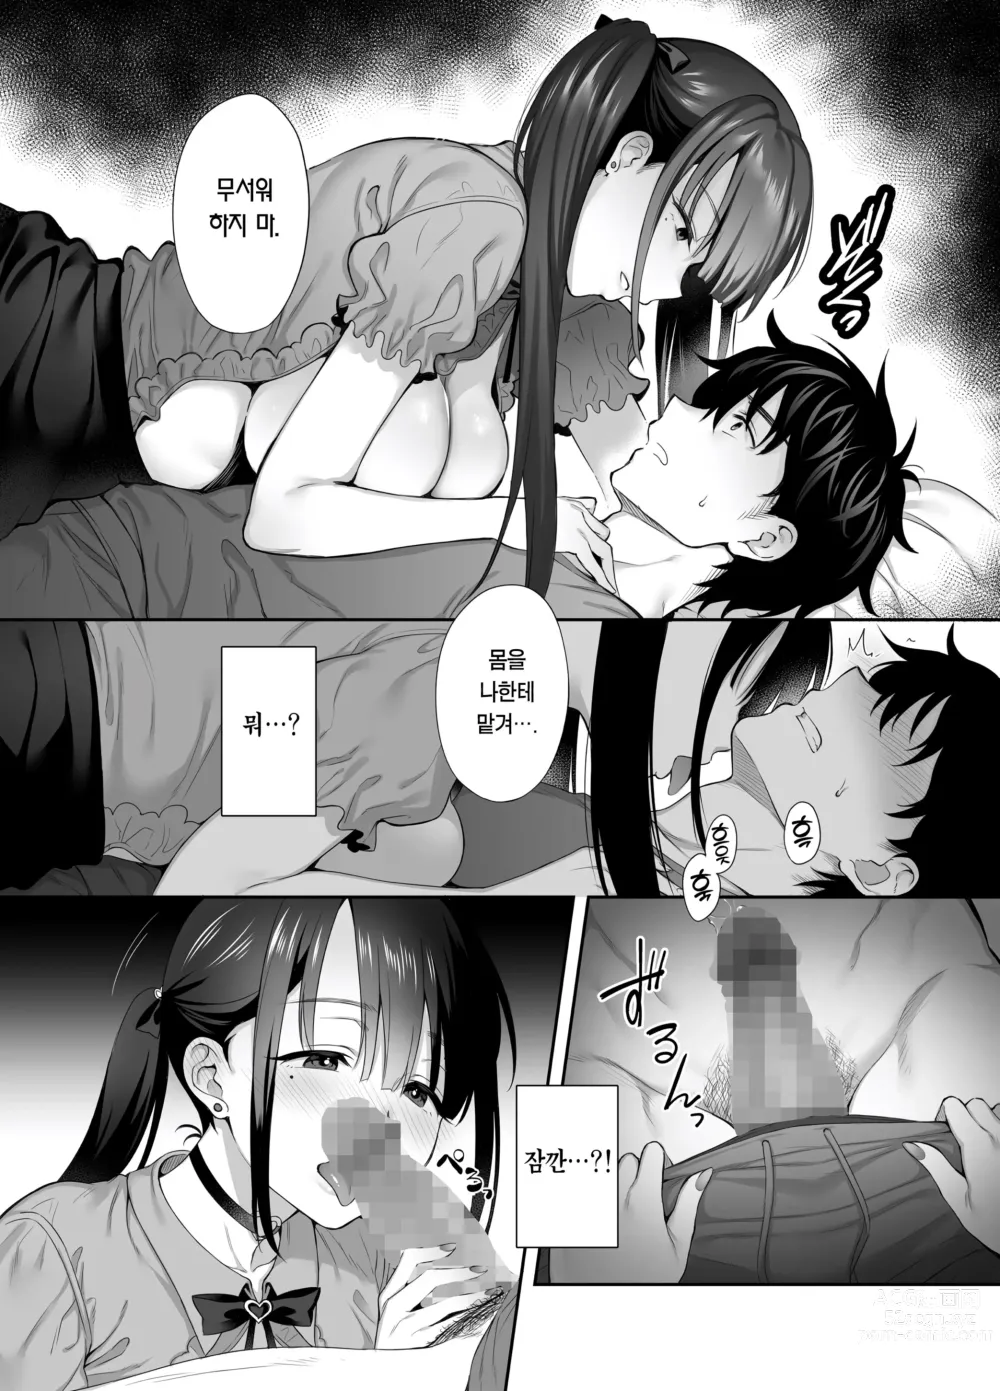 Page 13 of doujinshi 폐허에서 지뢰녀랑 밤새 질내사정 섹스한 이야기 2